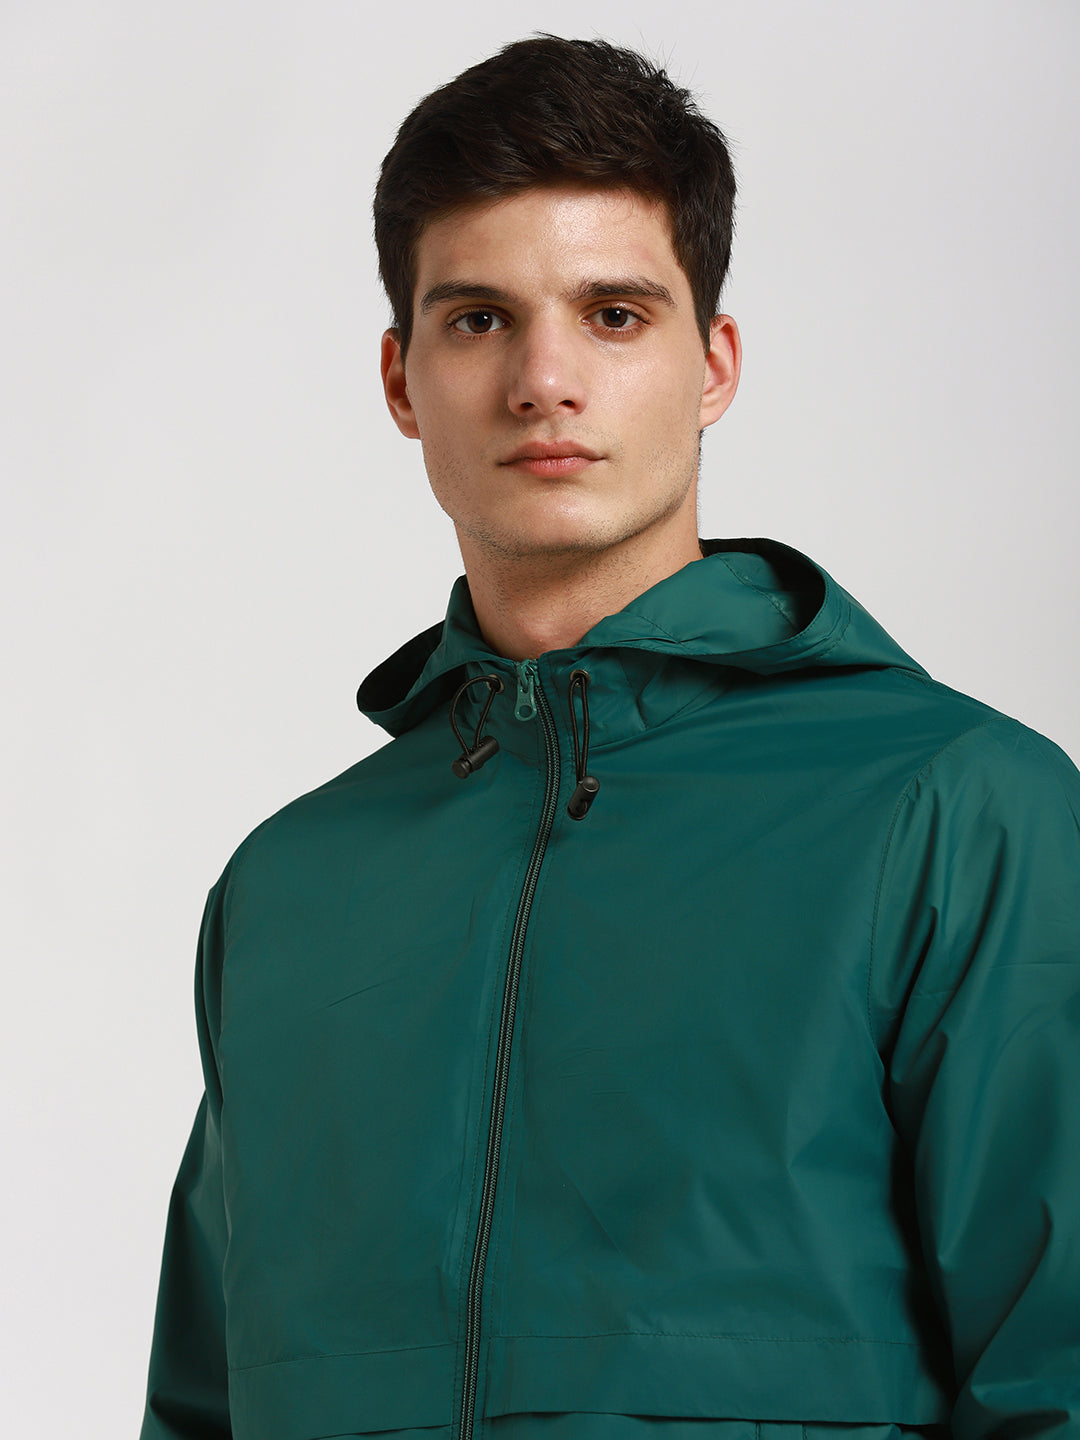 Dennis Lingo Men's Grass Green Solid Hood Full Sleeve Light weight jacket Jackets